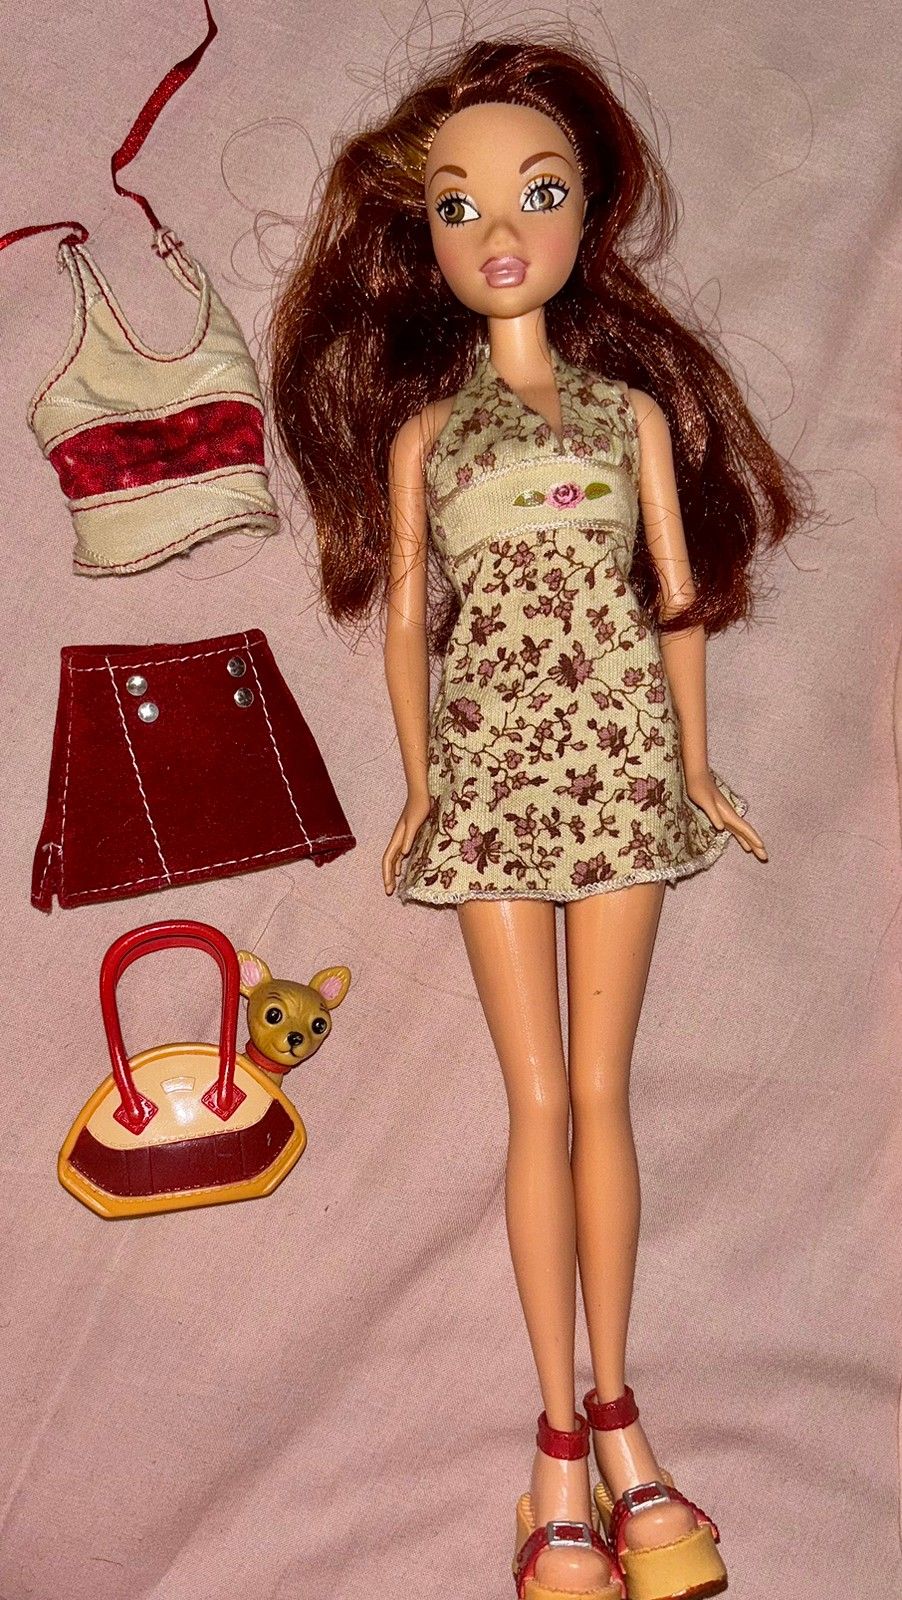 Barbie MyScene Teresa nukke, asusteet ja vaatteet.